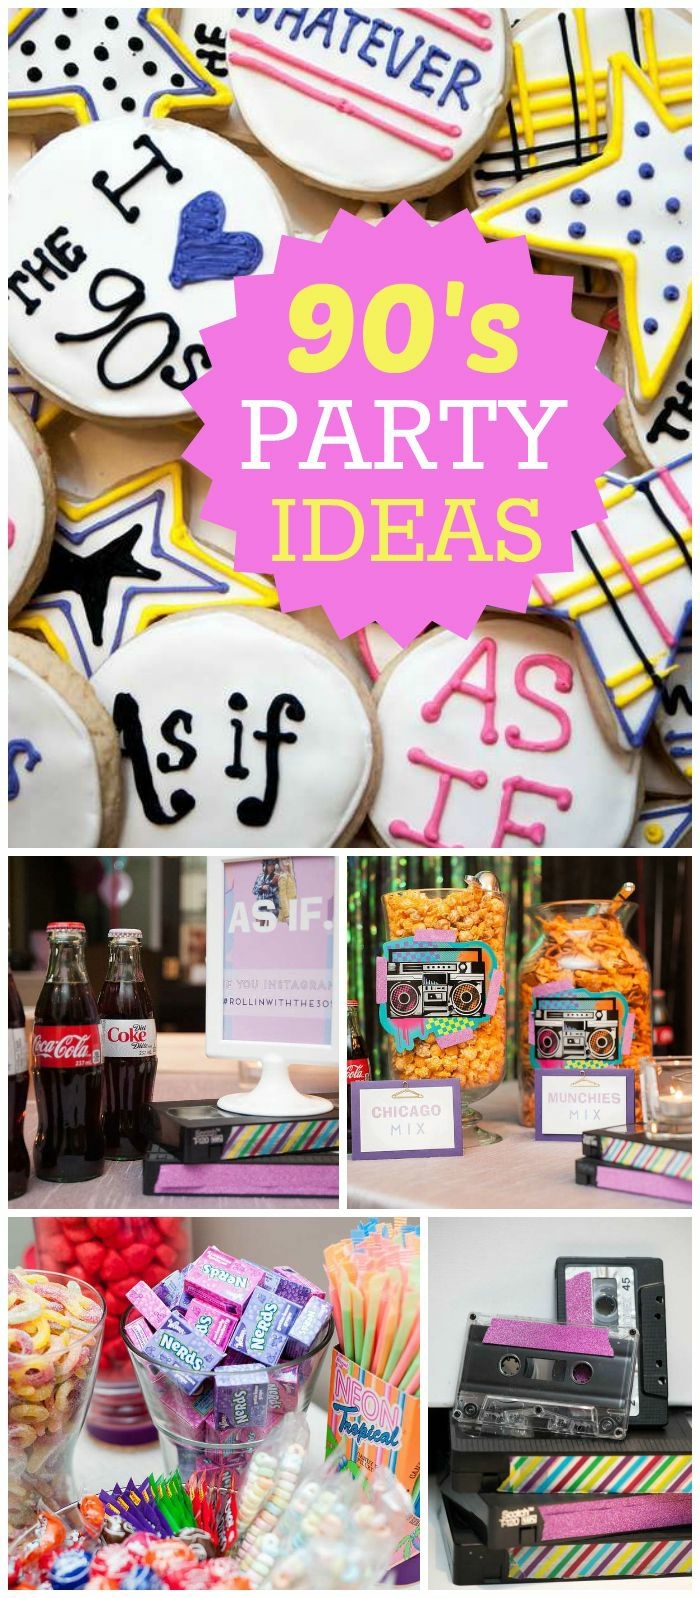 18 geburtstag deko idee zu einer motivparty im stil neunziger jahren kekse mit aufschrift, cola, snacks, dekorationen